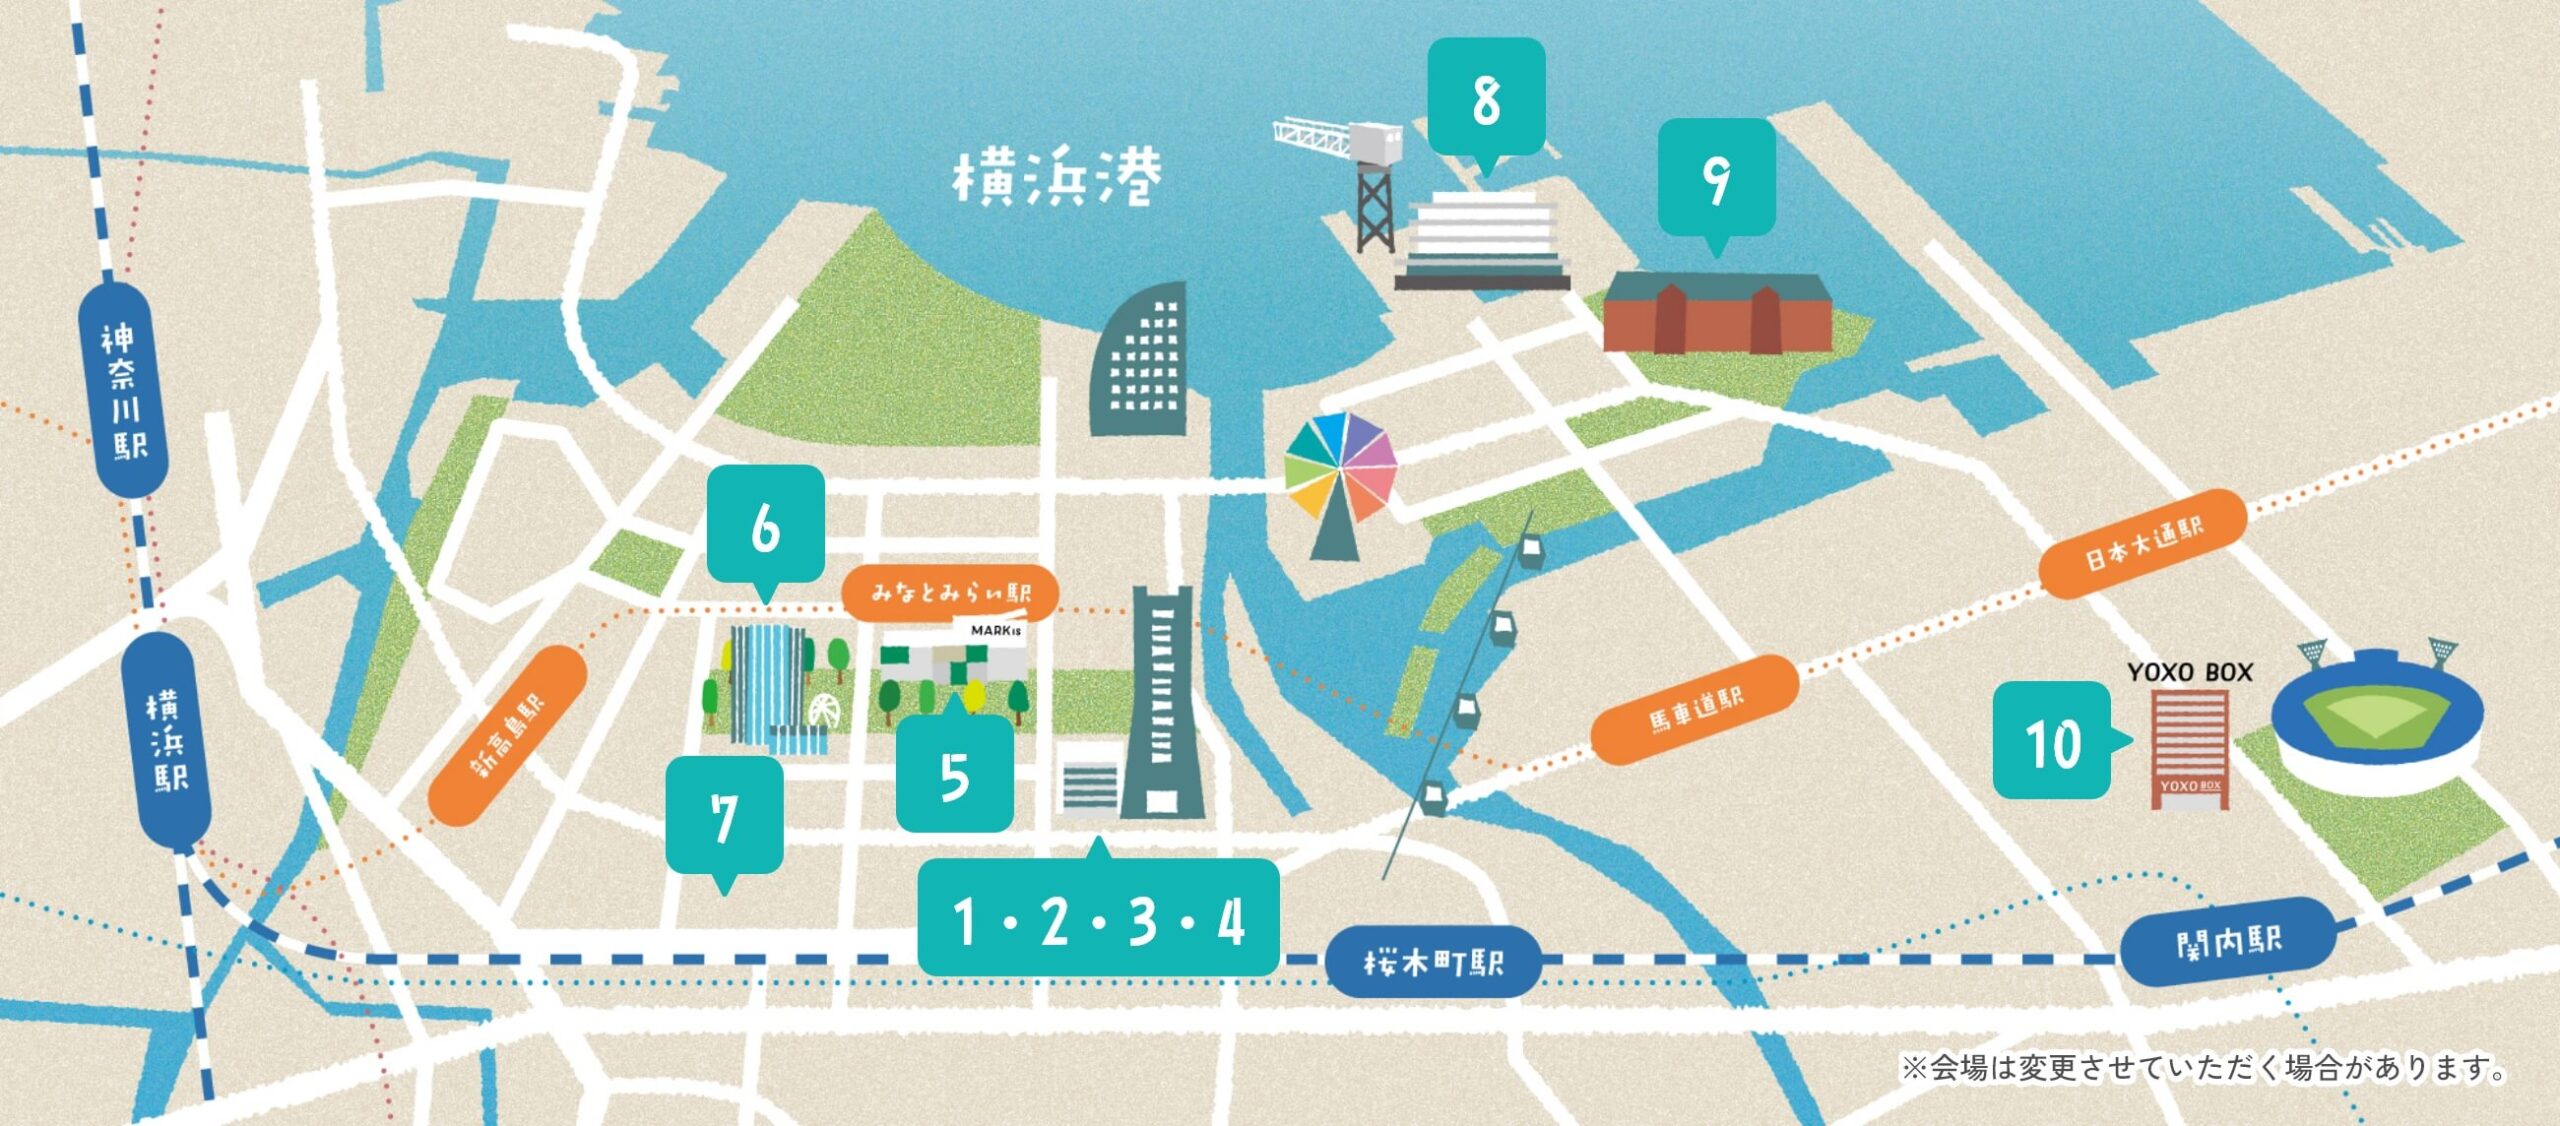 Yokohama YOXO Festival 2024 venue map